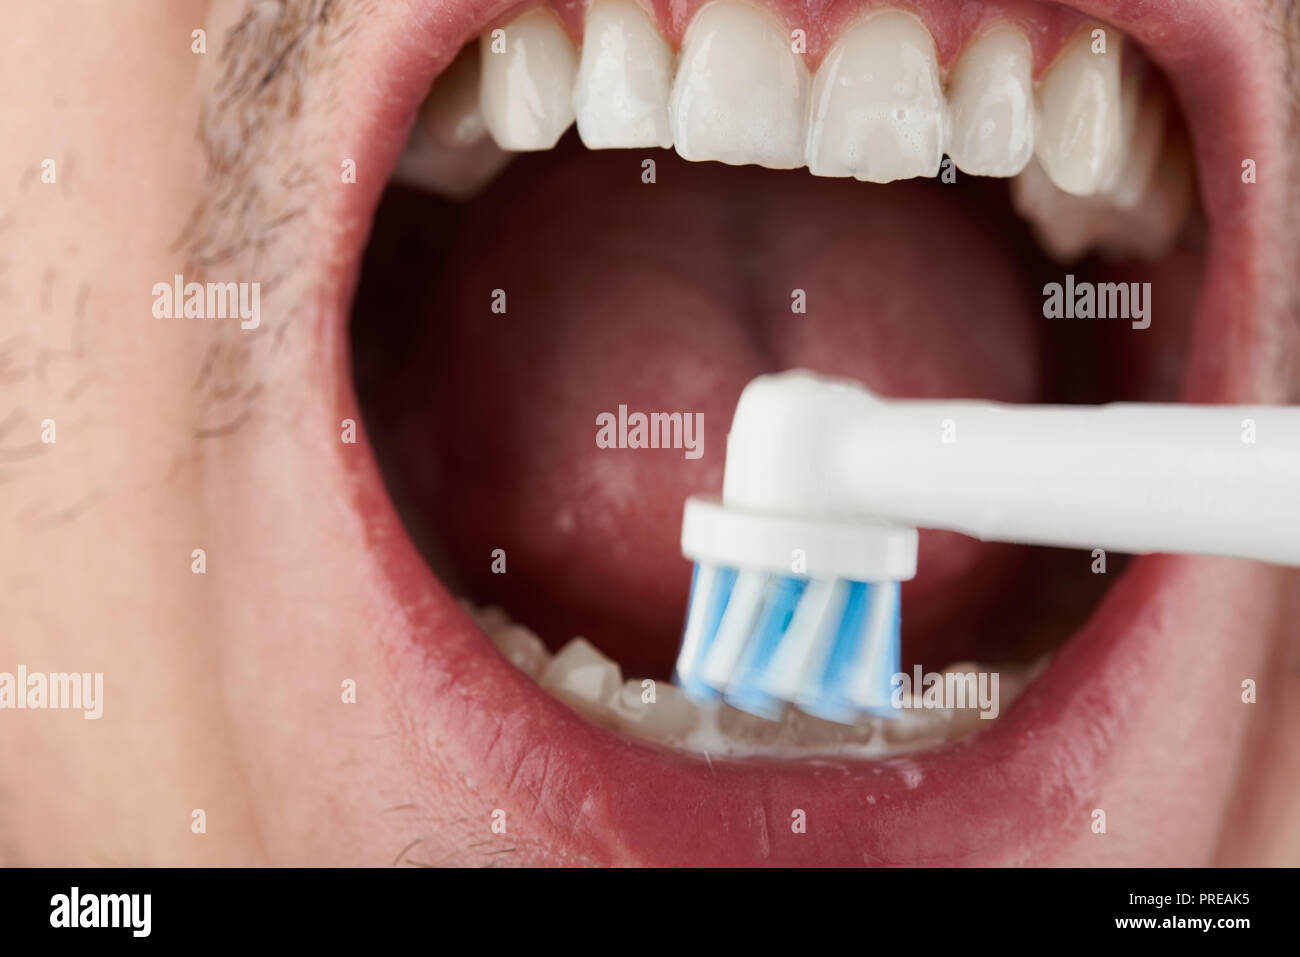 Limpiar el cepillo de dientes eléctrico